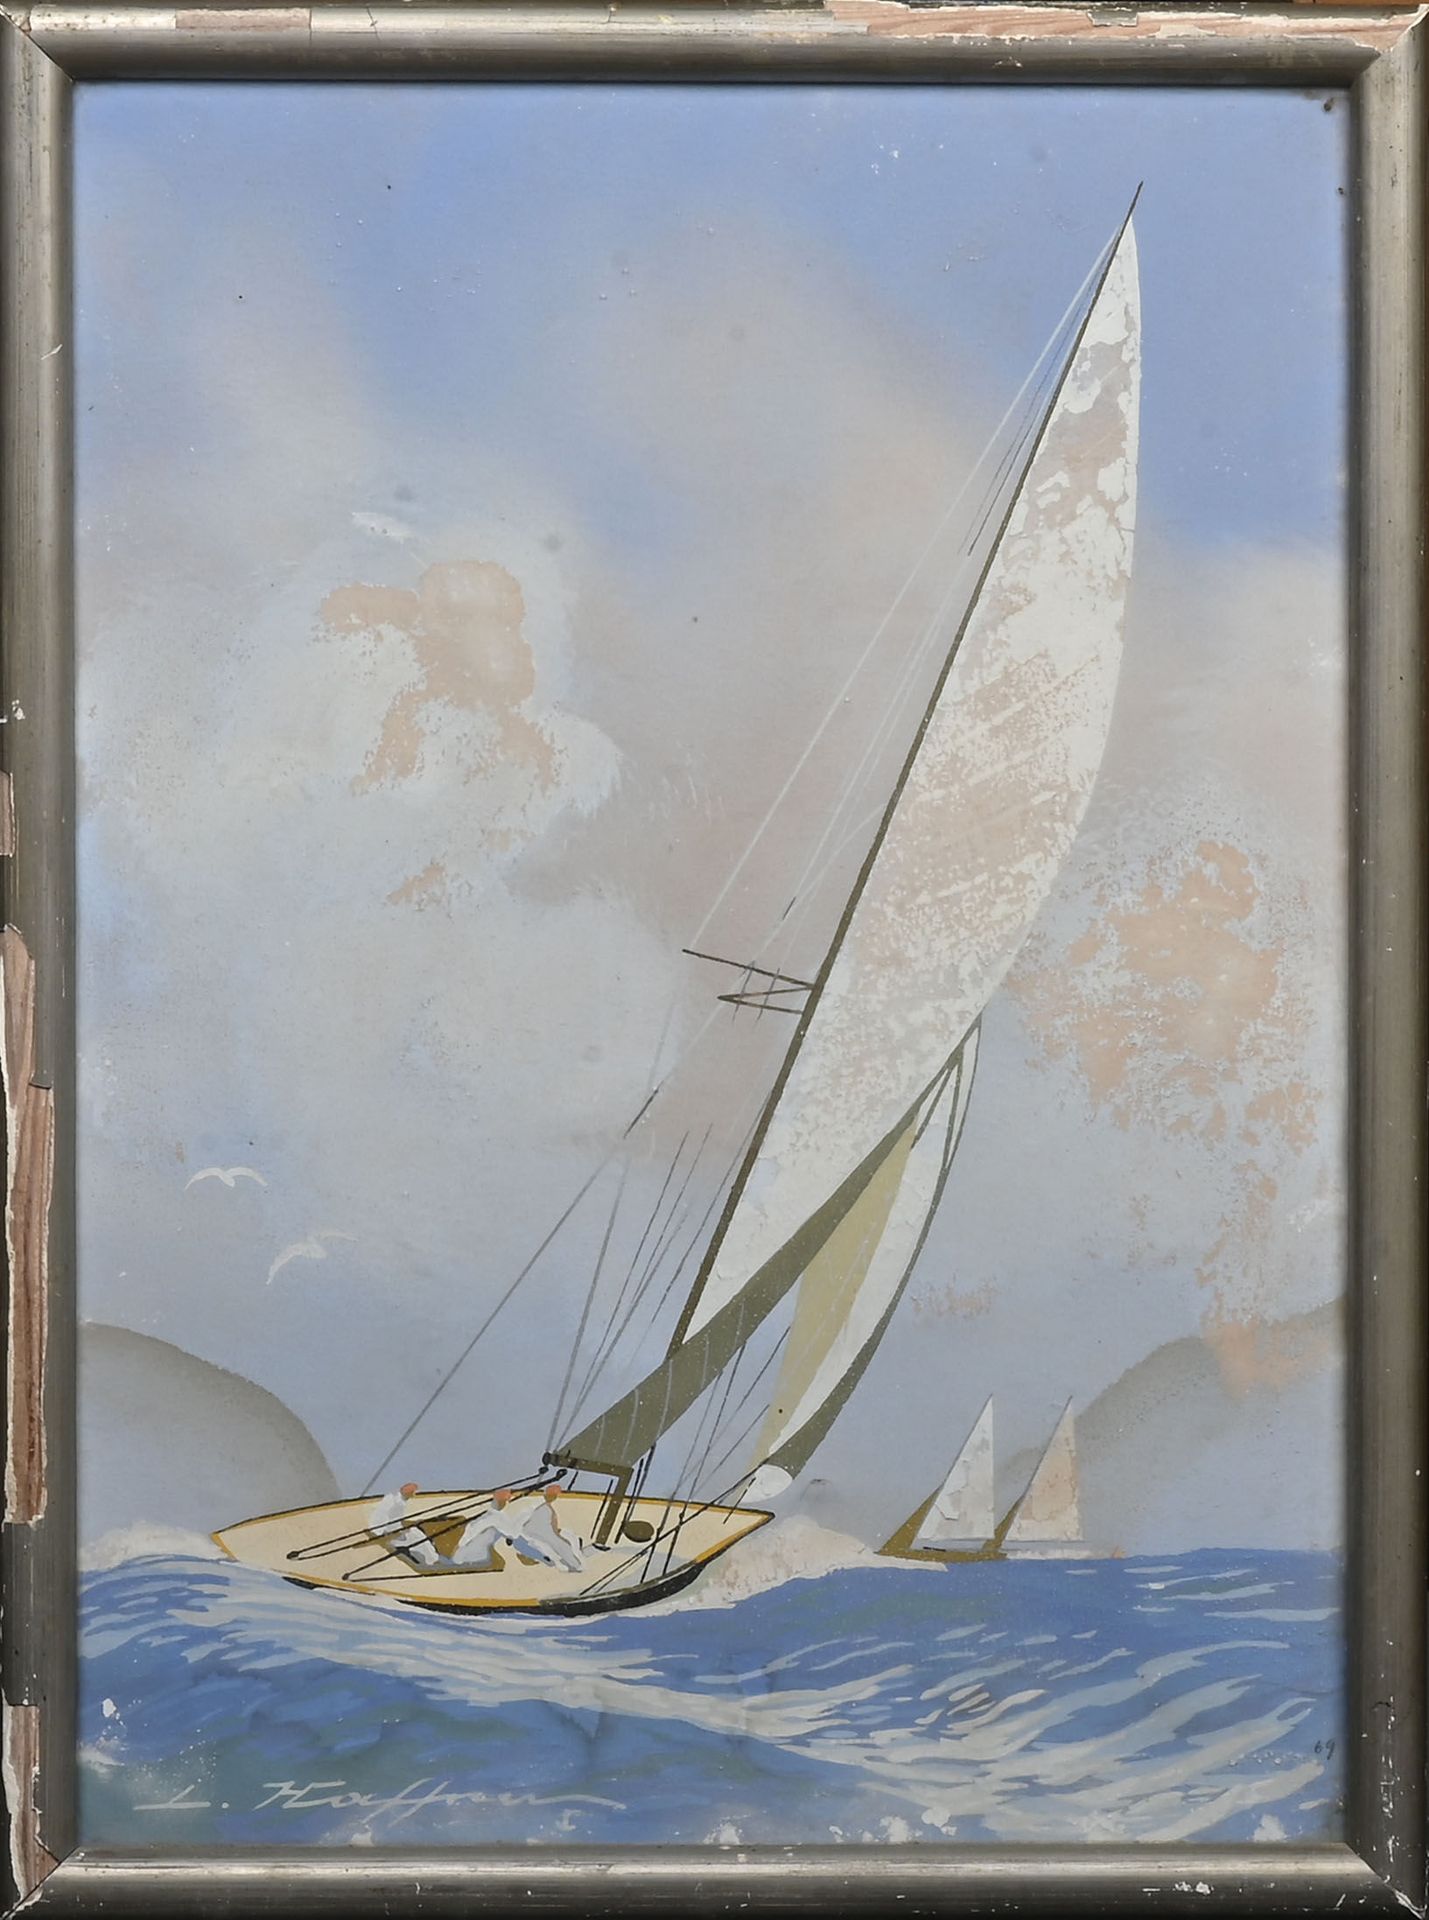 Null 莱昂-哈夫纳 (1881-1972)
帆船 1969年
水粉画，左下角有签名，右下角有铅笔写的日期 "69"（抬头和掉漆）。 
43 x 31厘米。